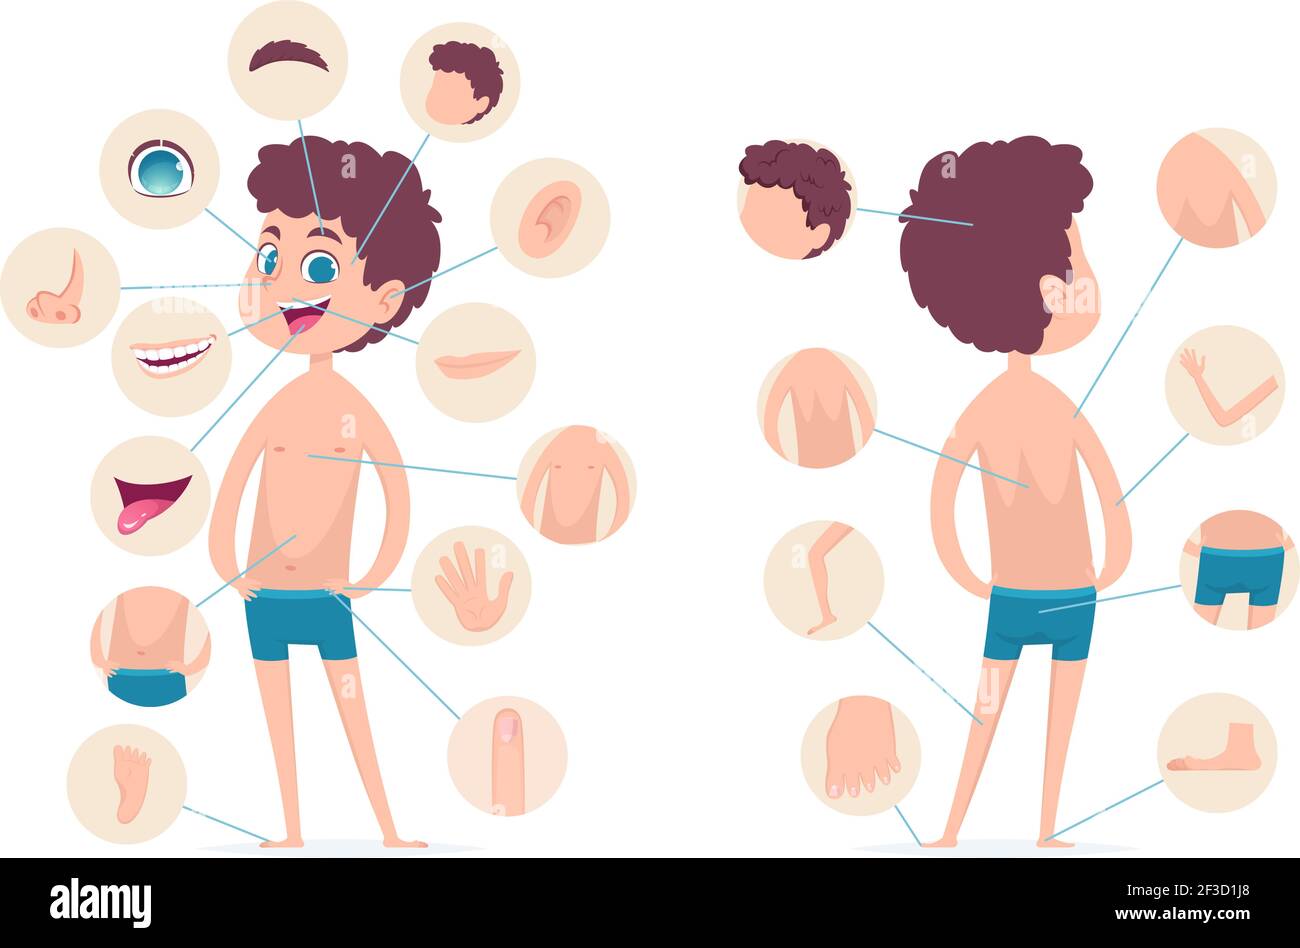 Boy Körperteile. Junge menschliche Schule männlich Kind Anatomie Hände Beine Finger Kopf Vektor Cartoon Charakter Stock Vektor